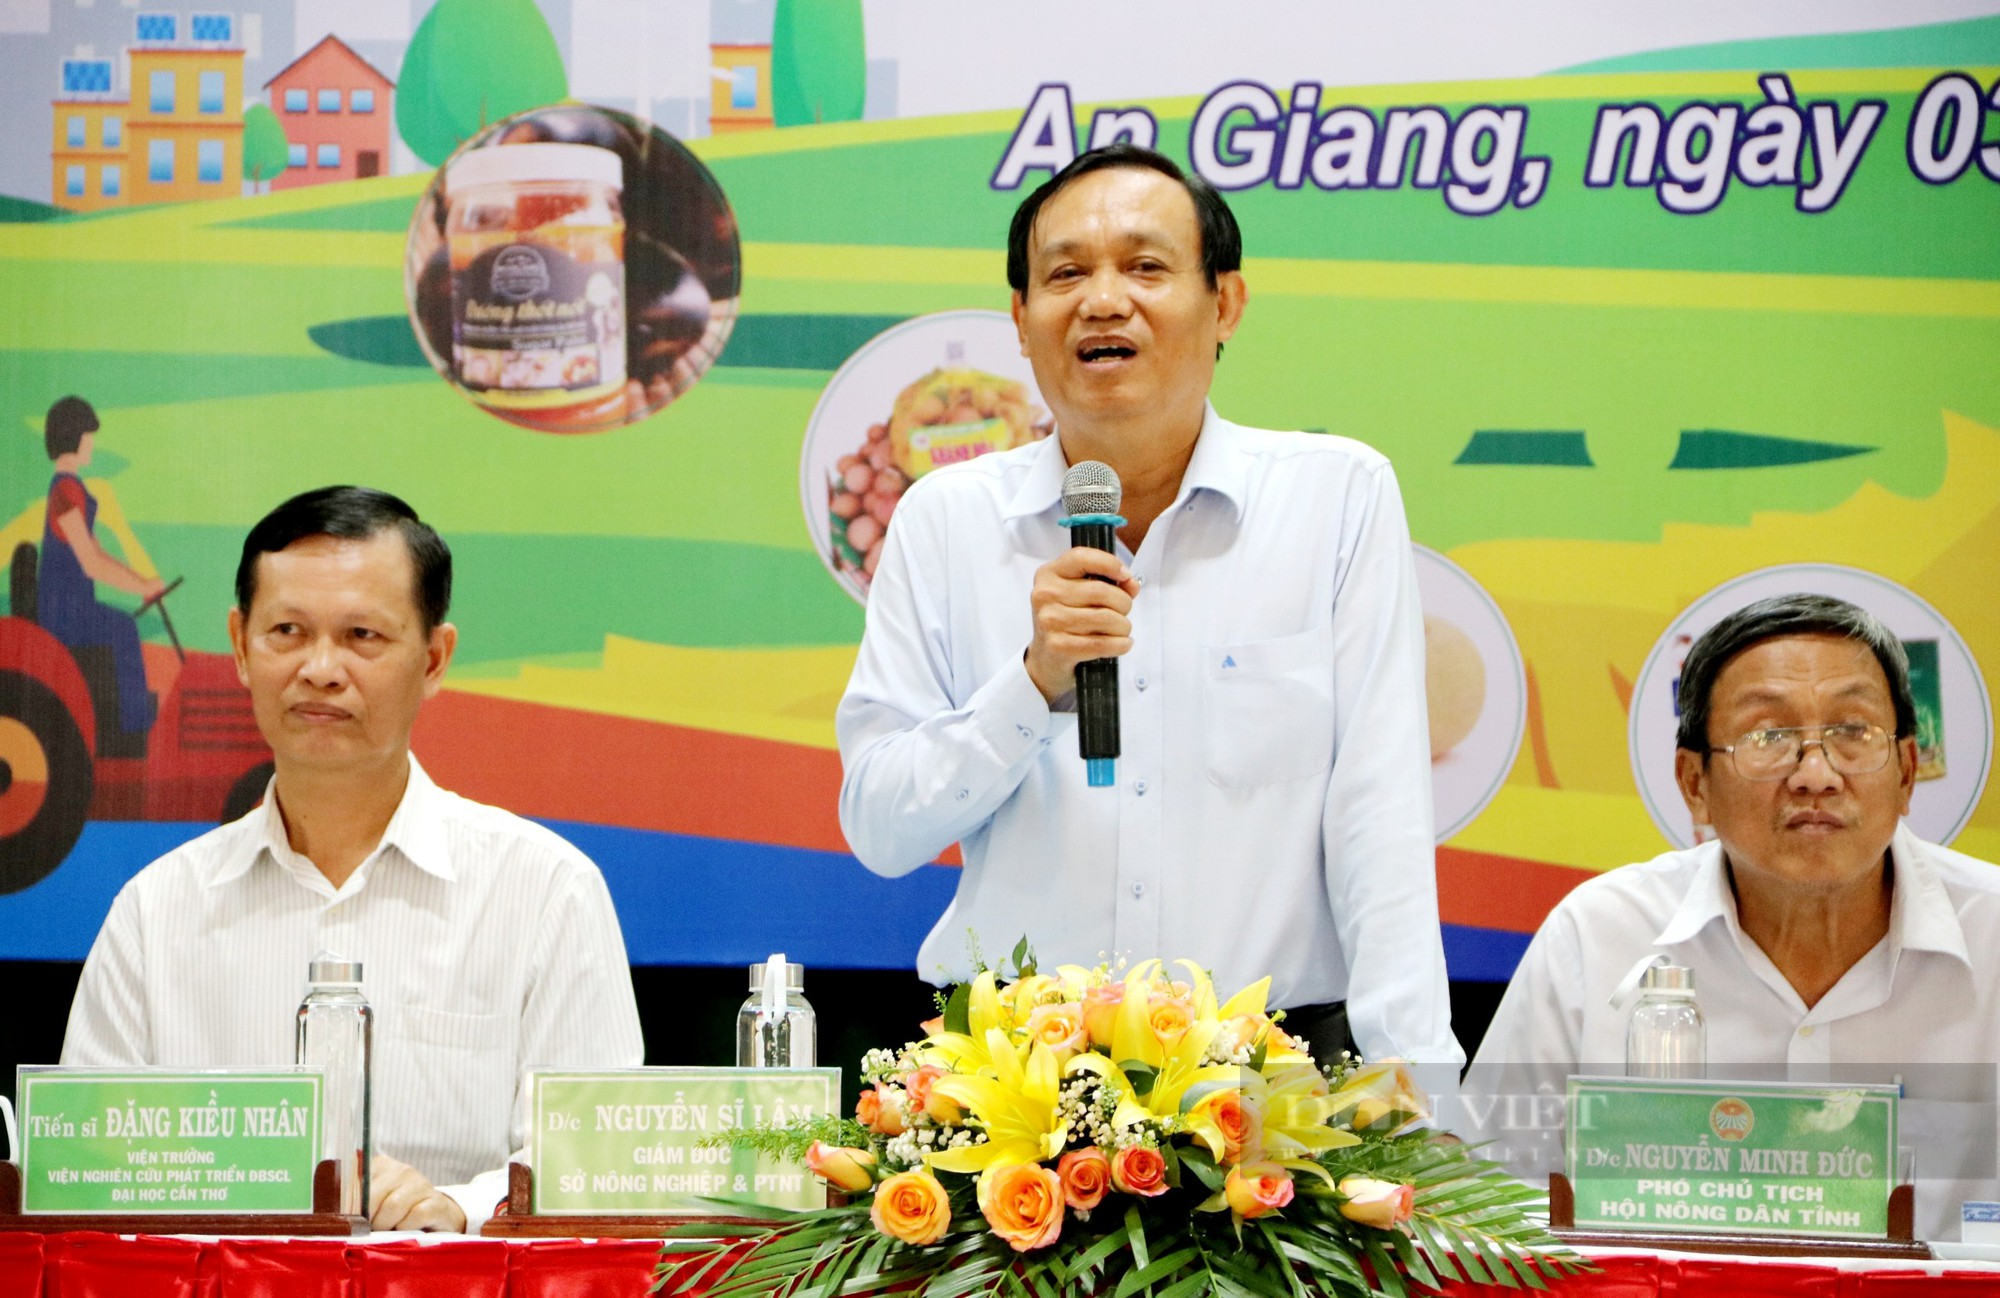 Hội Nông dân tỉnh An Giang mời chuyên gia bàn giải pháp thúc đẩy liên kết chuỗi giá trị nông sản - Ảnh 3.